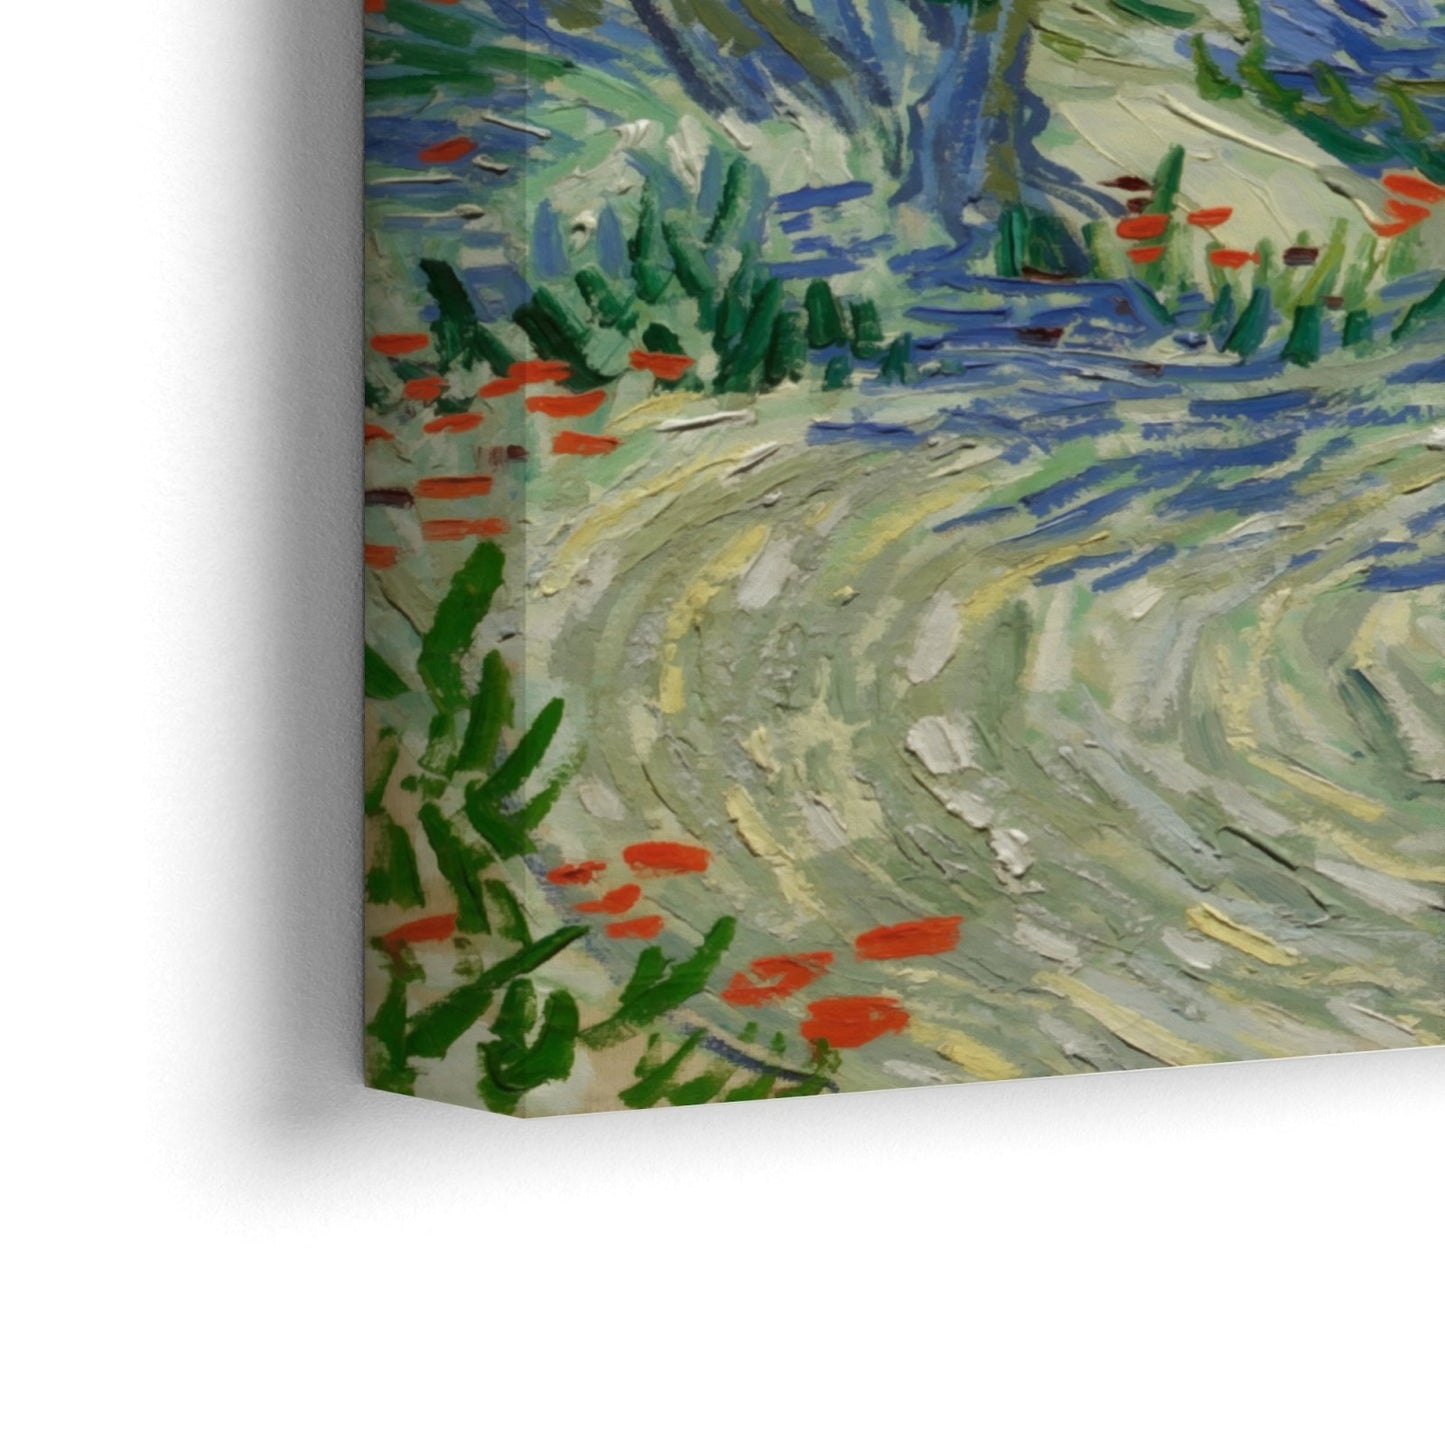 Olivový sad 1889, Vincent Van Gogh